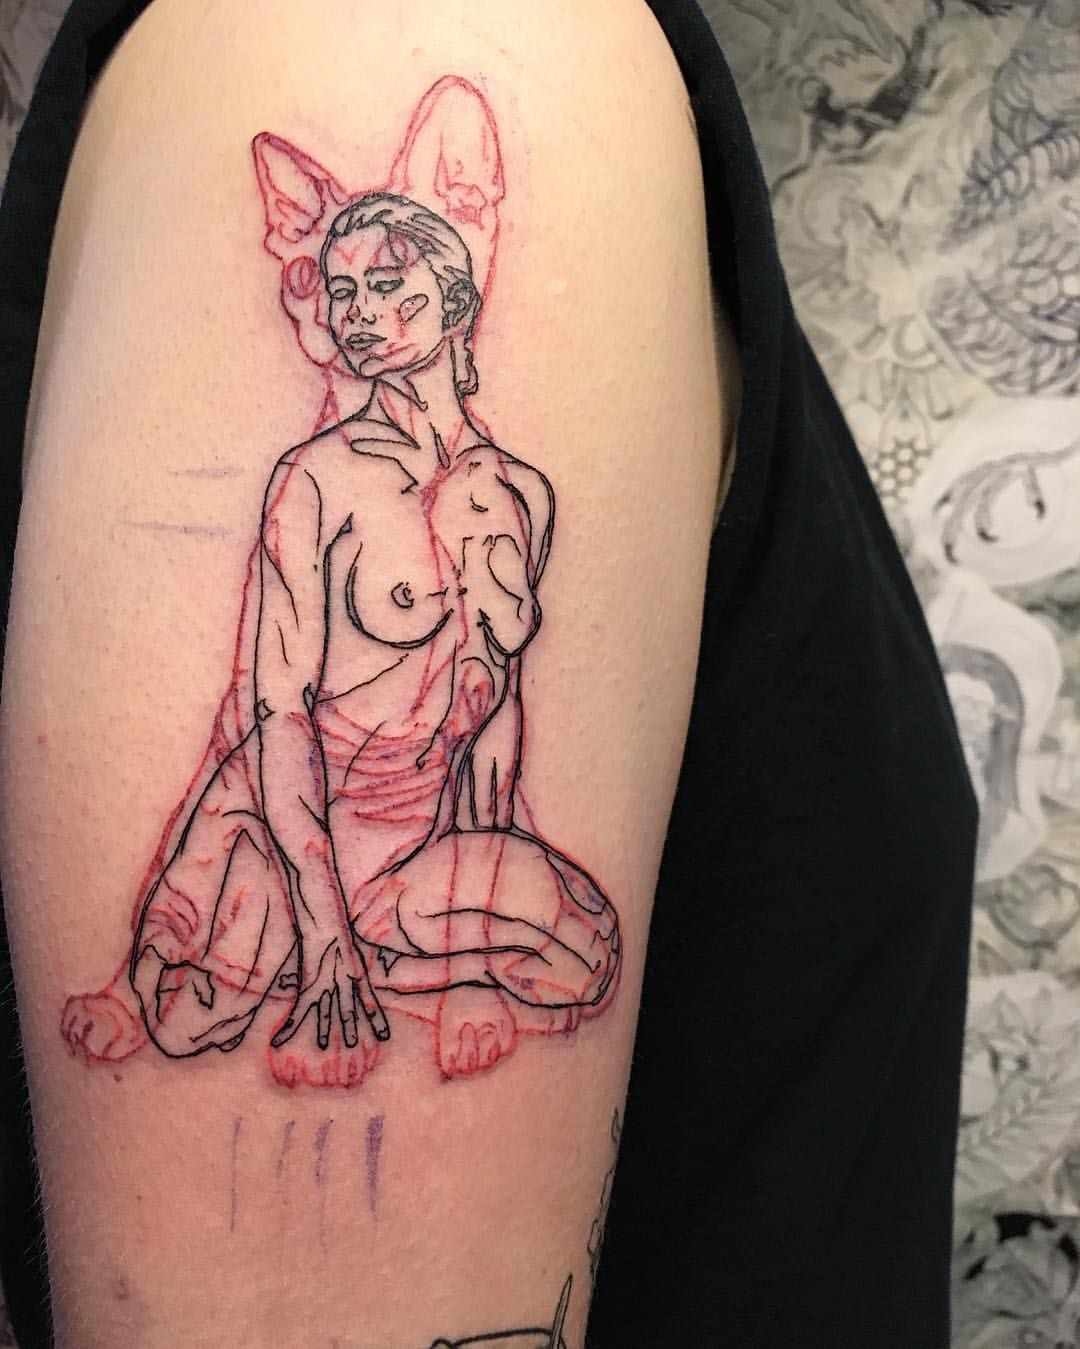 Kombinerar svarta och röda tatueringar - naken kvinna med katt i bakgrunden